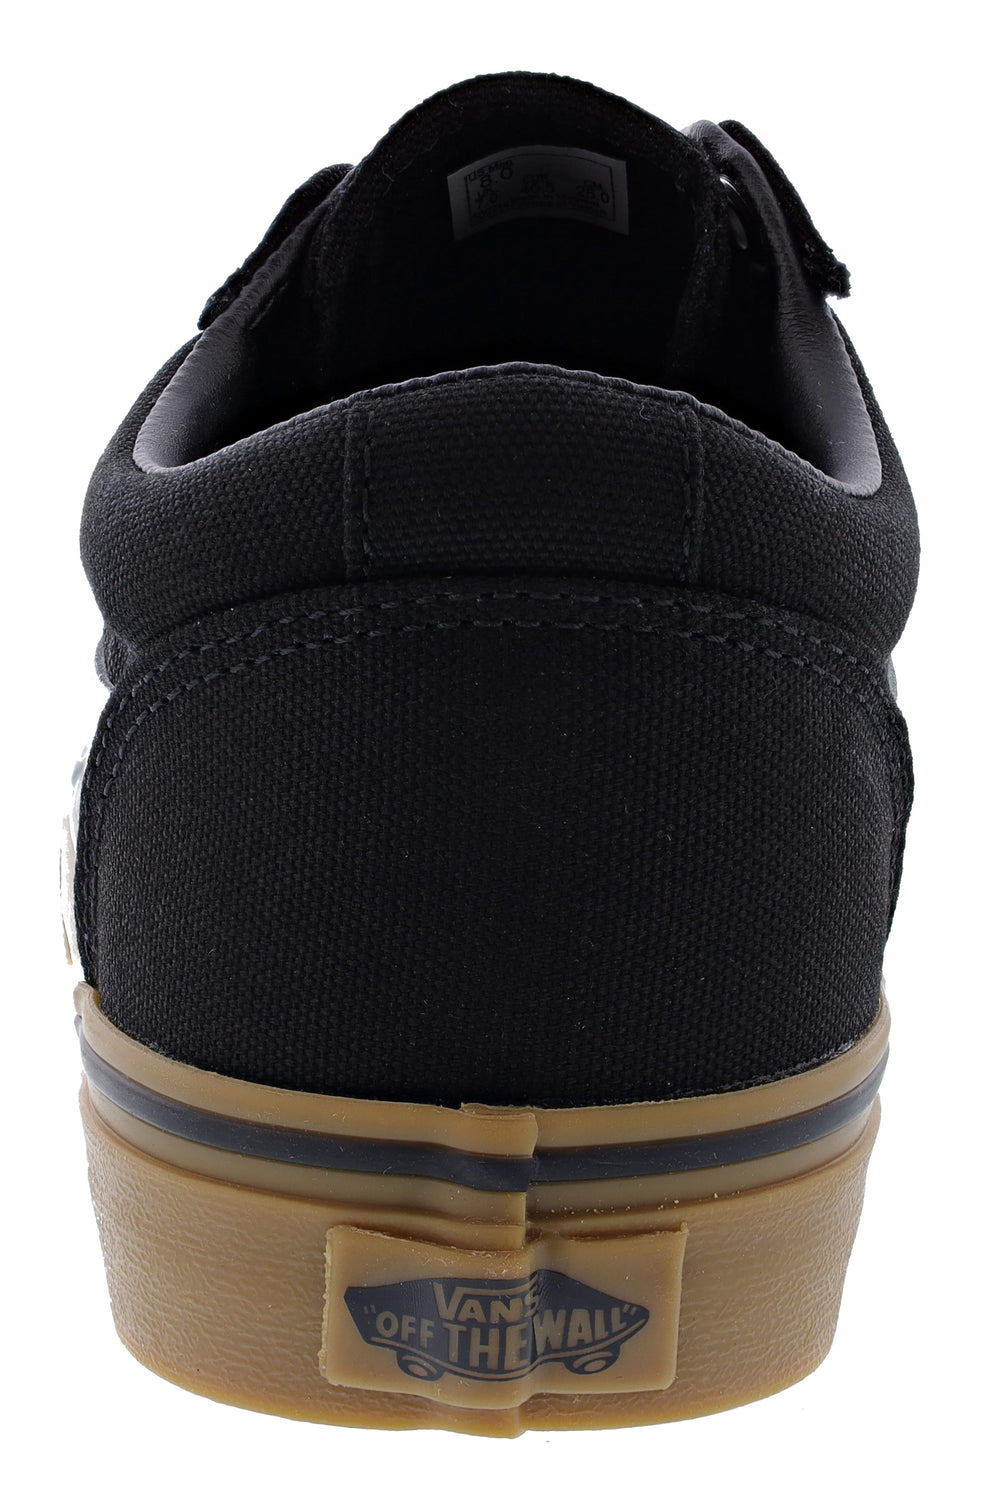 Vans Men's Vulcanized Rubber Sole Low Top Walking Skate Shoes, Black, 4